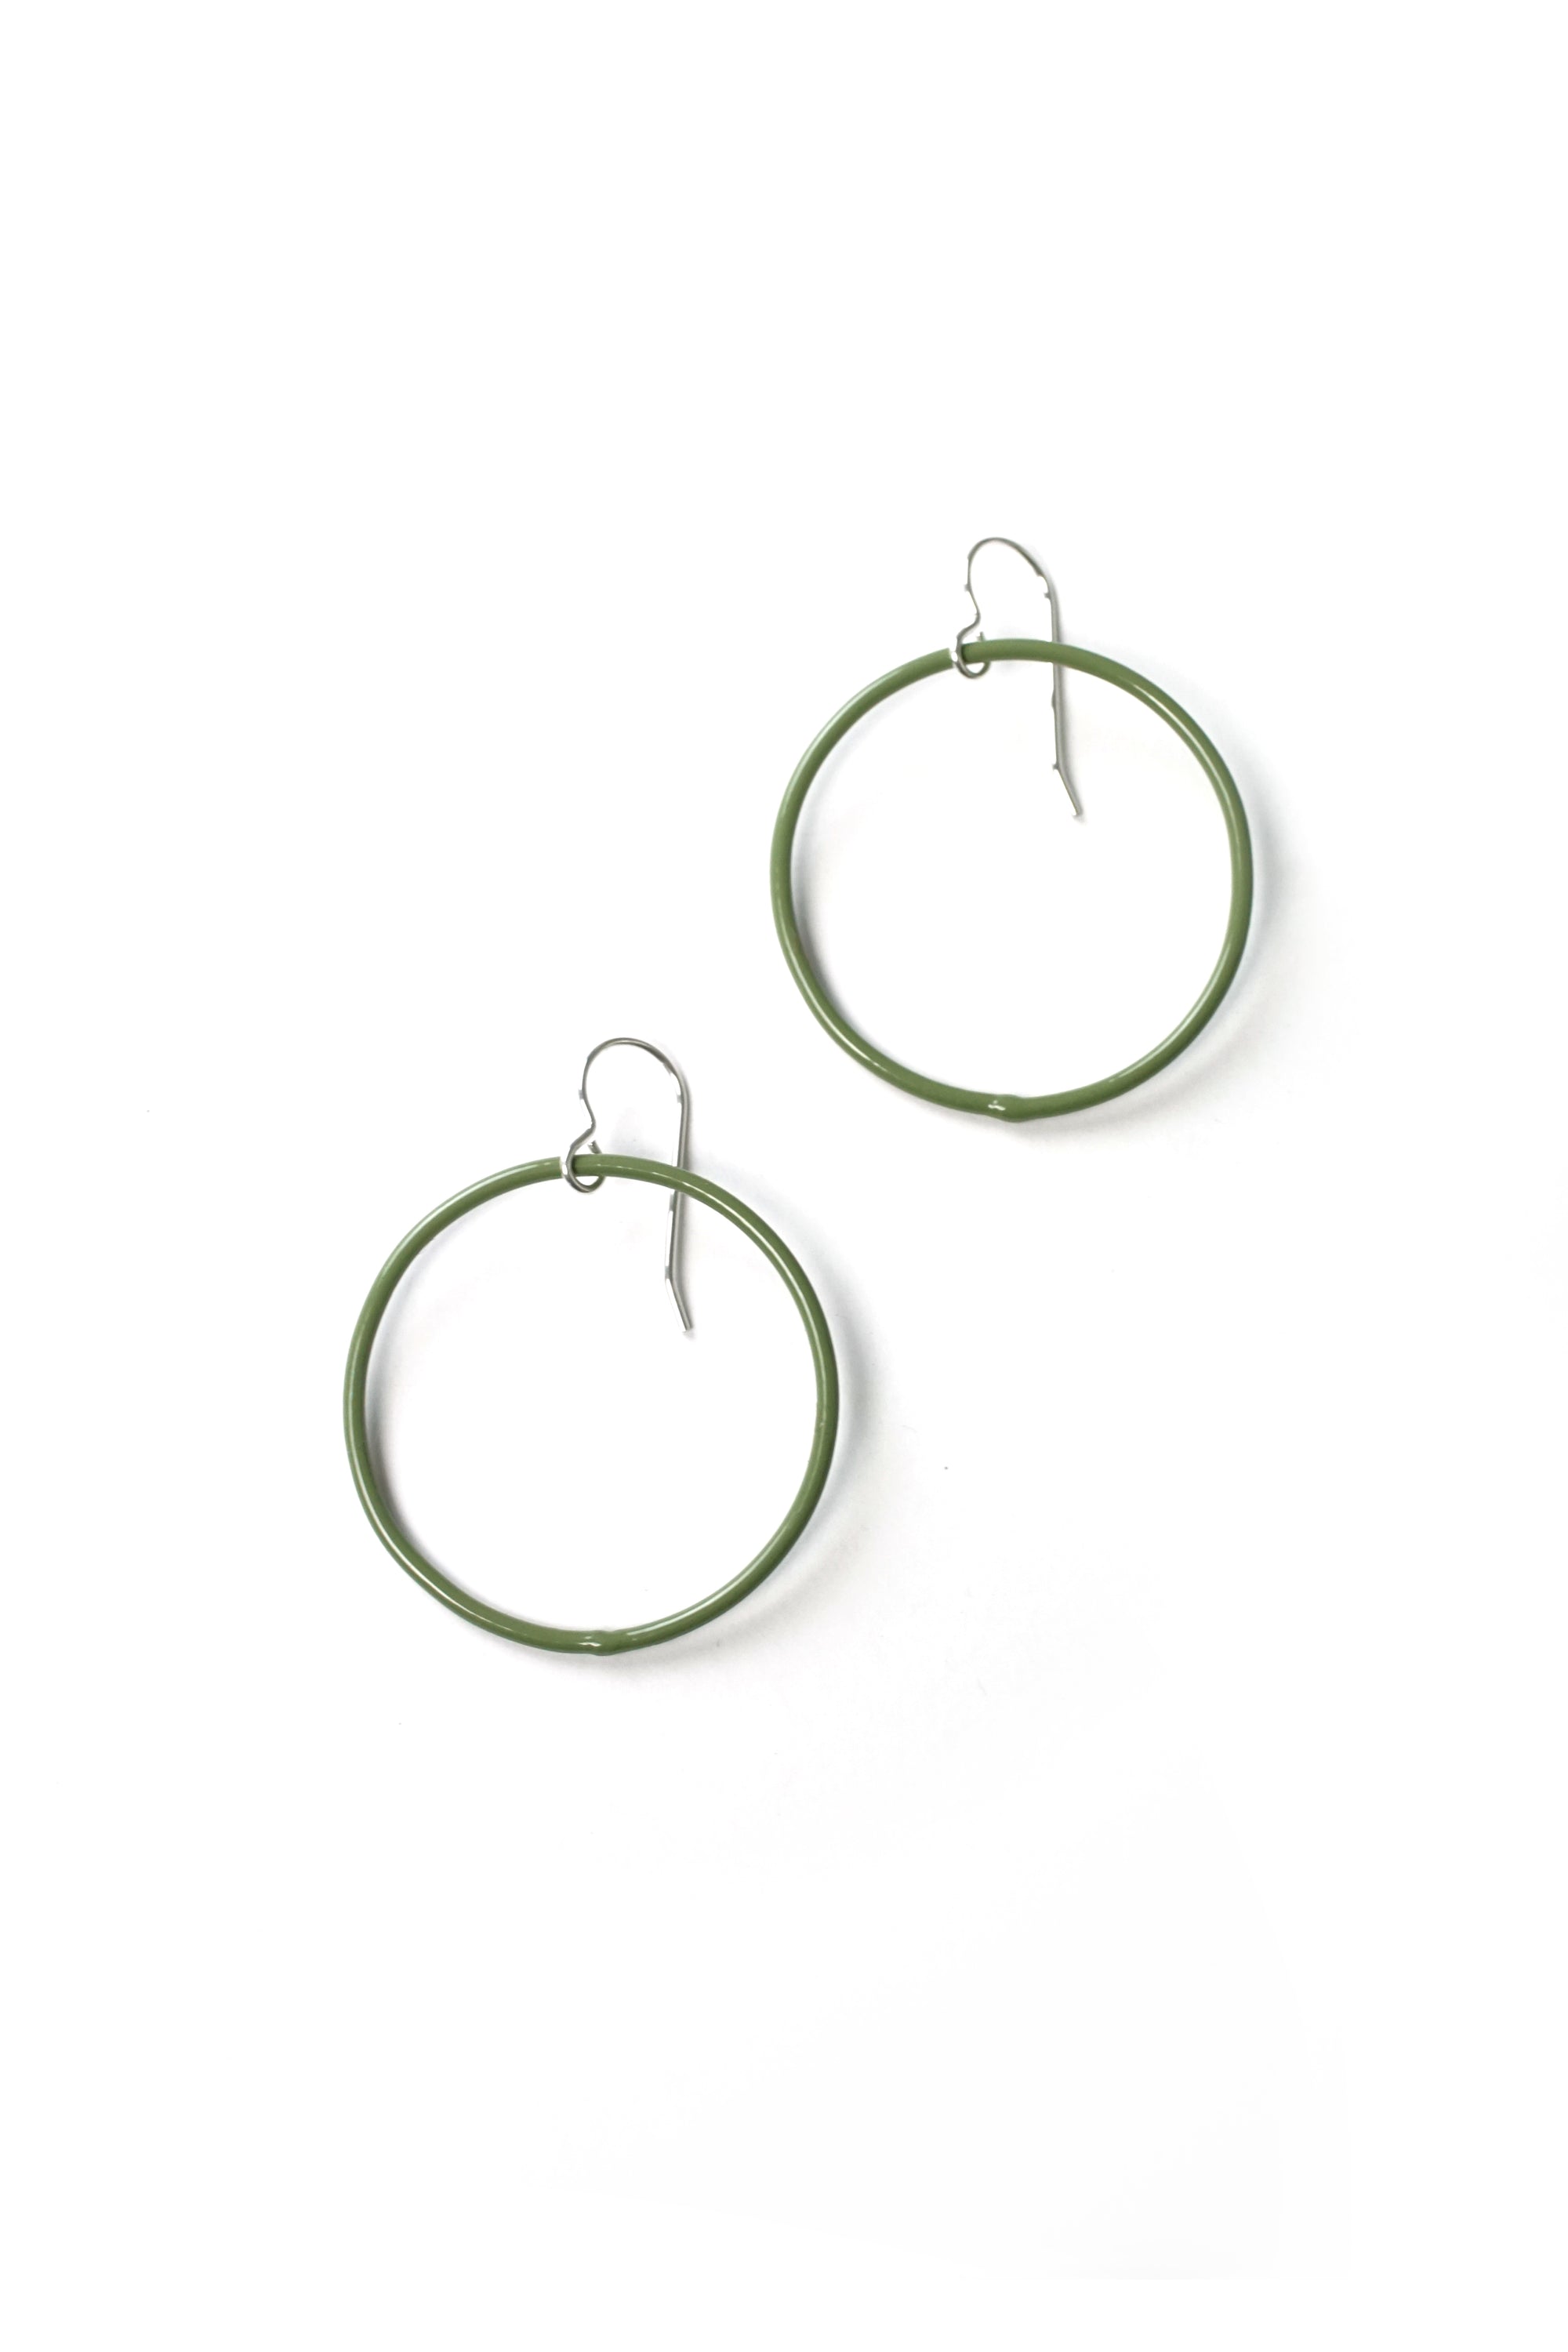 Medium Evident Earrings in Olive Green